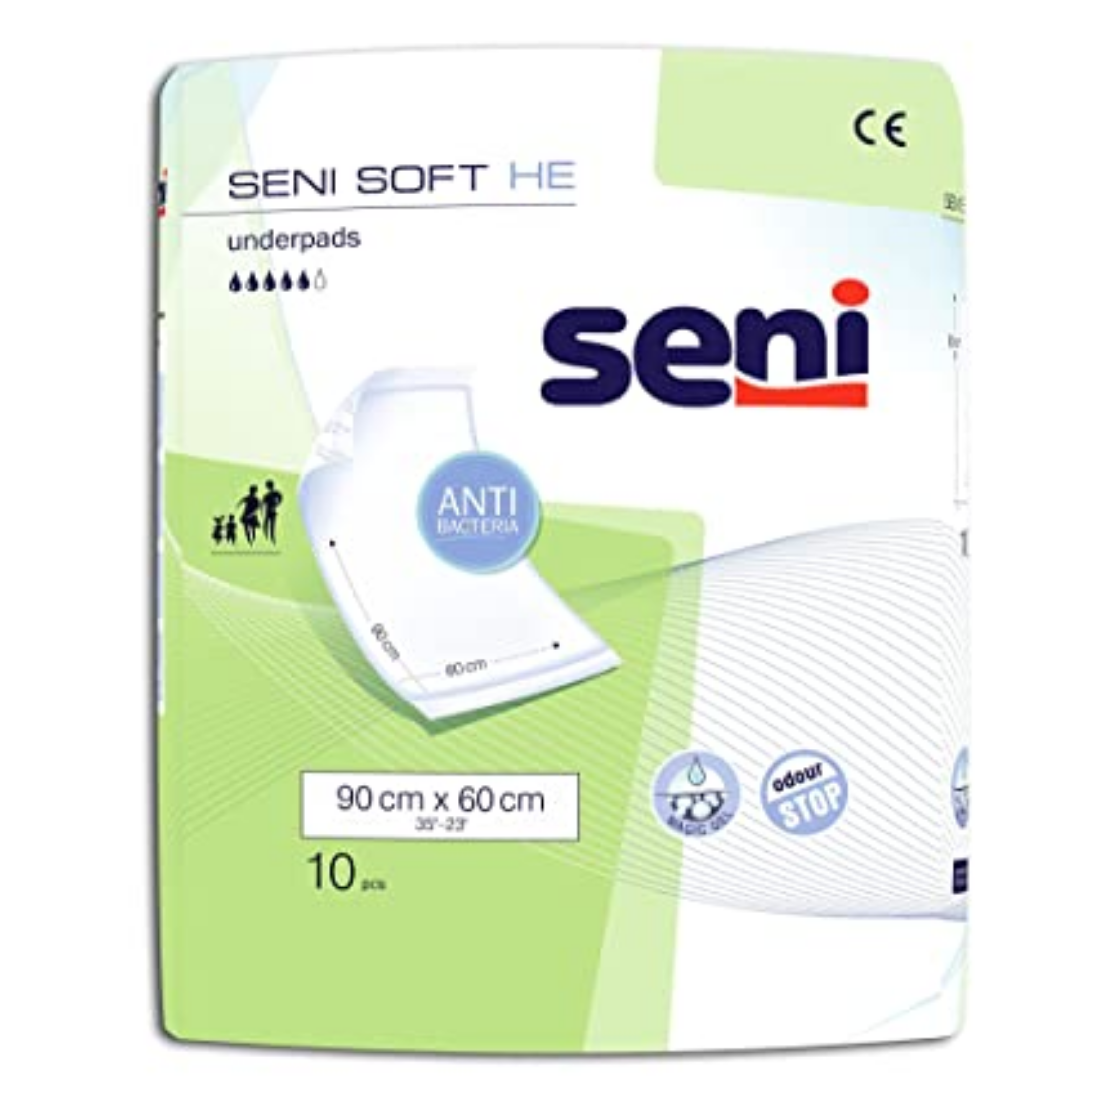 Seni Soft He Underpads - 10 Pieces (90 x 60 cm)